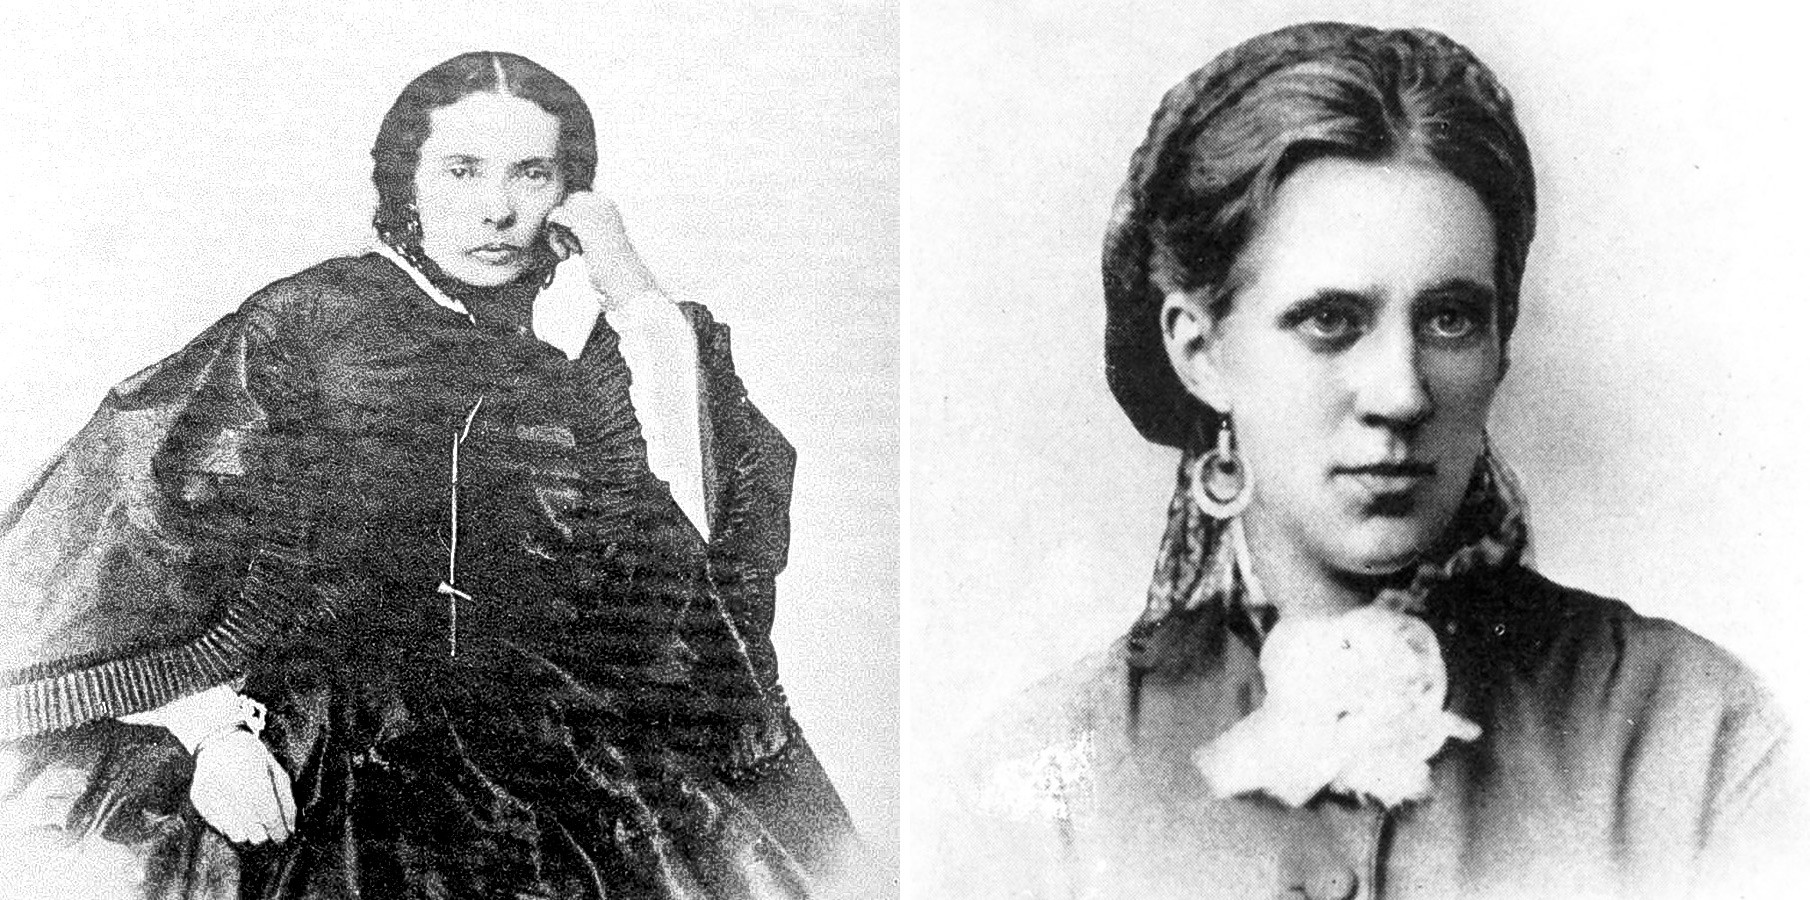 Prva žena Marija (levo) in druga žena Anna (desno) 